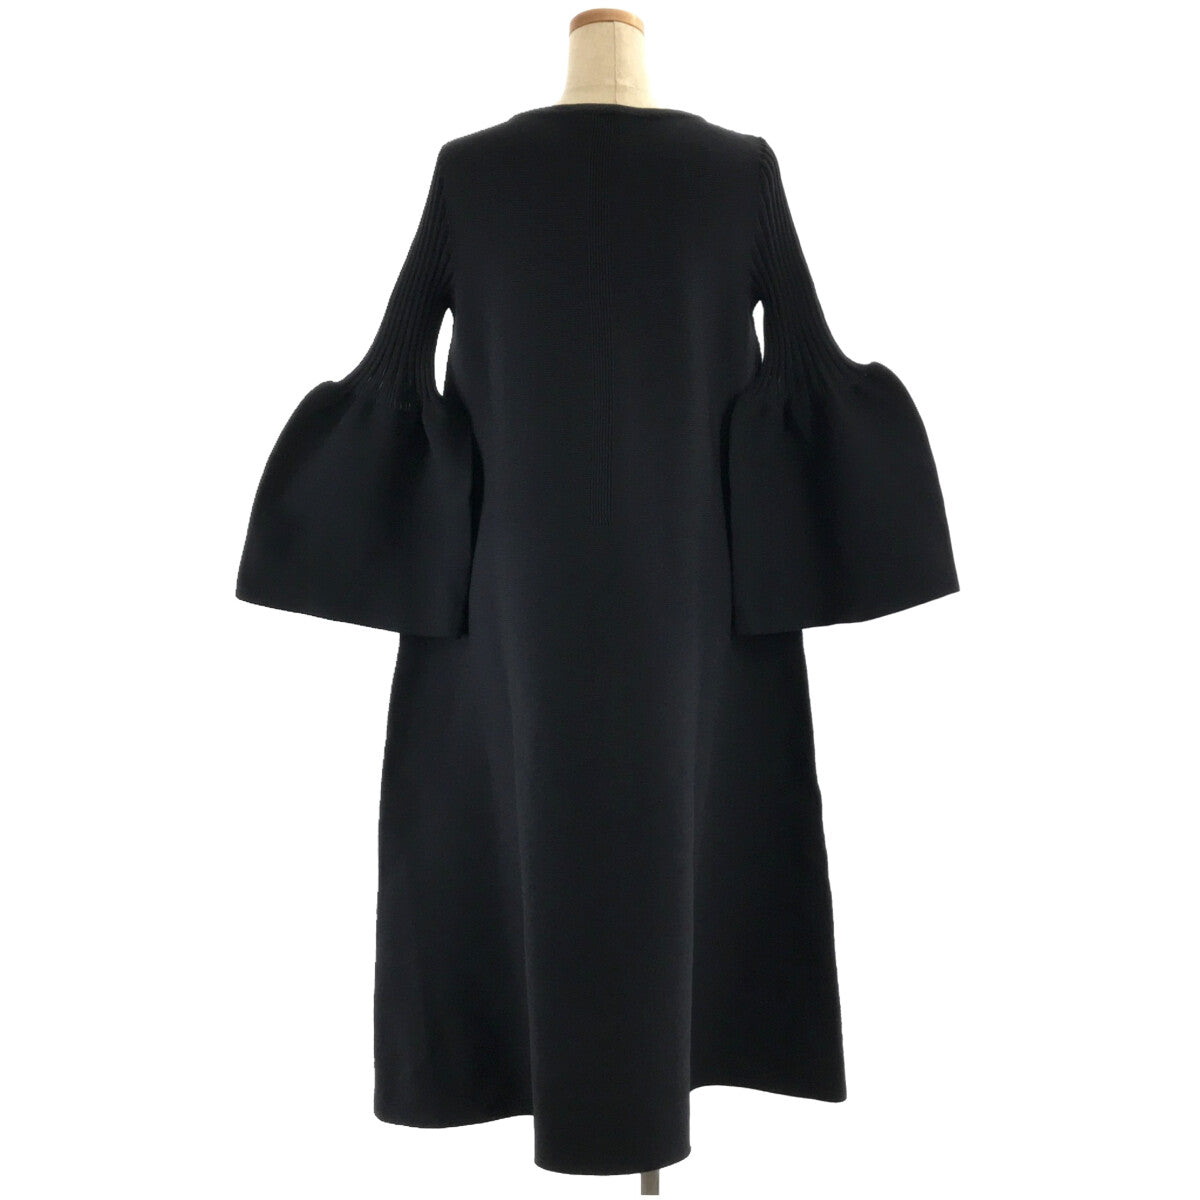 CFCL / シーエフシーエル | POTTERY KAFTAN DRESS ポッタリー カフタン ドレス ニット ワンピース | 1 |